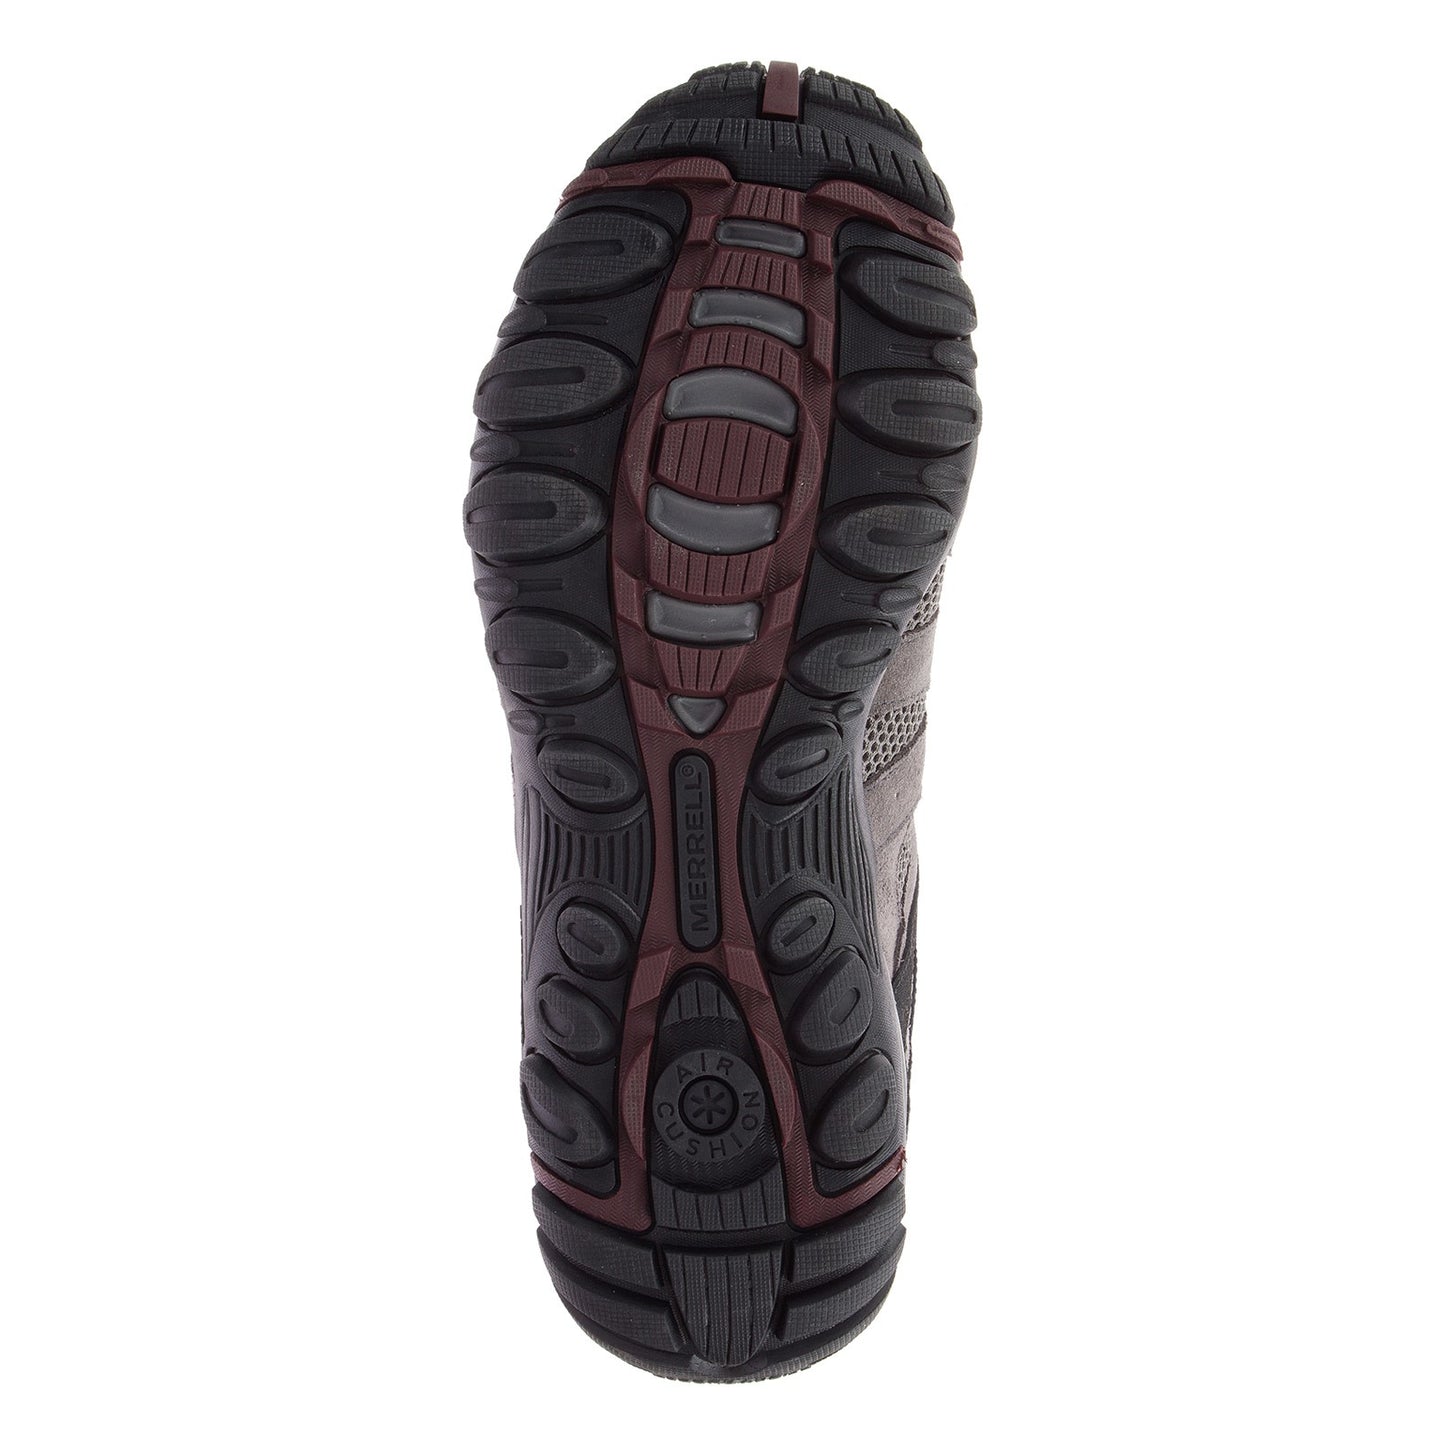 Peltz Shoes  Men's Merrell Accentor 2 Ventilator Waterproof Hiking Shoe GRANITE J84951